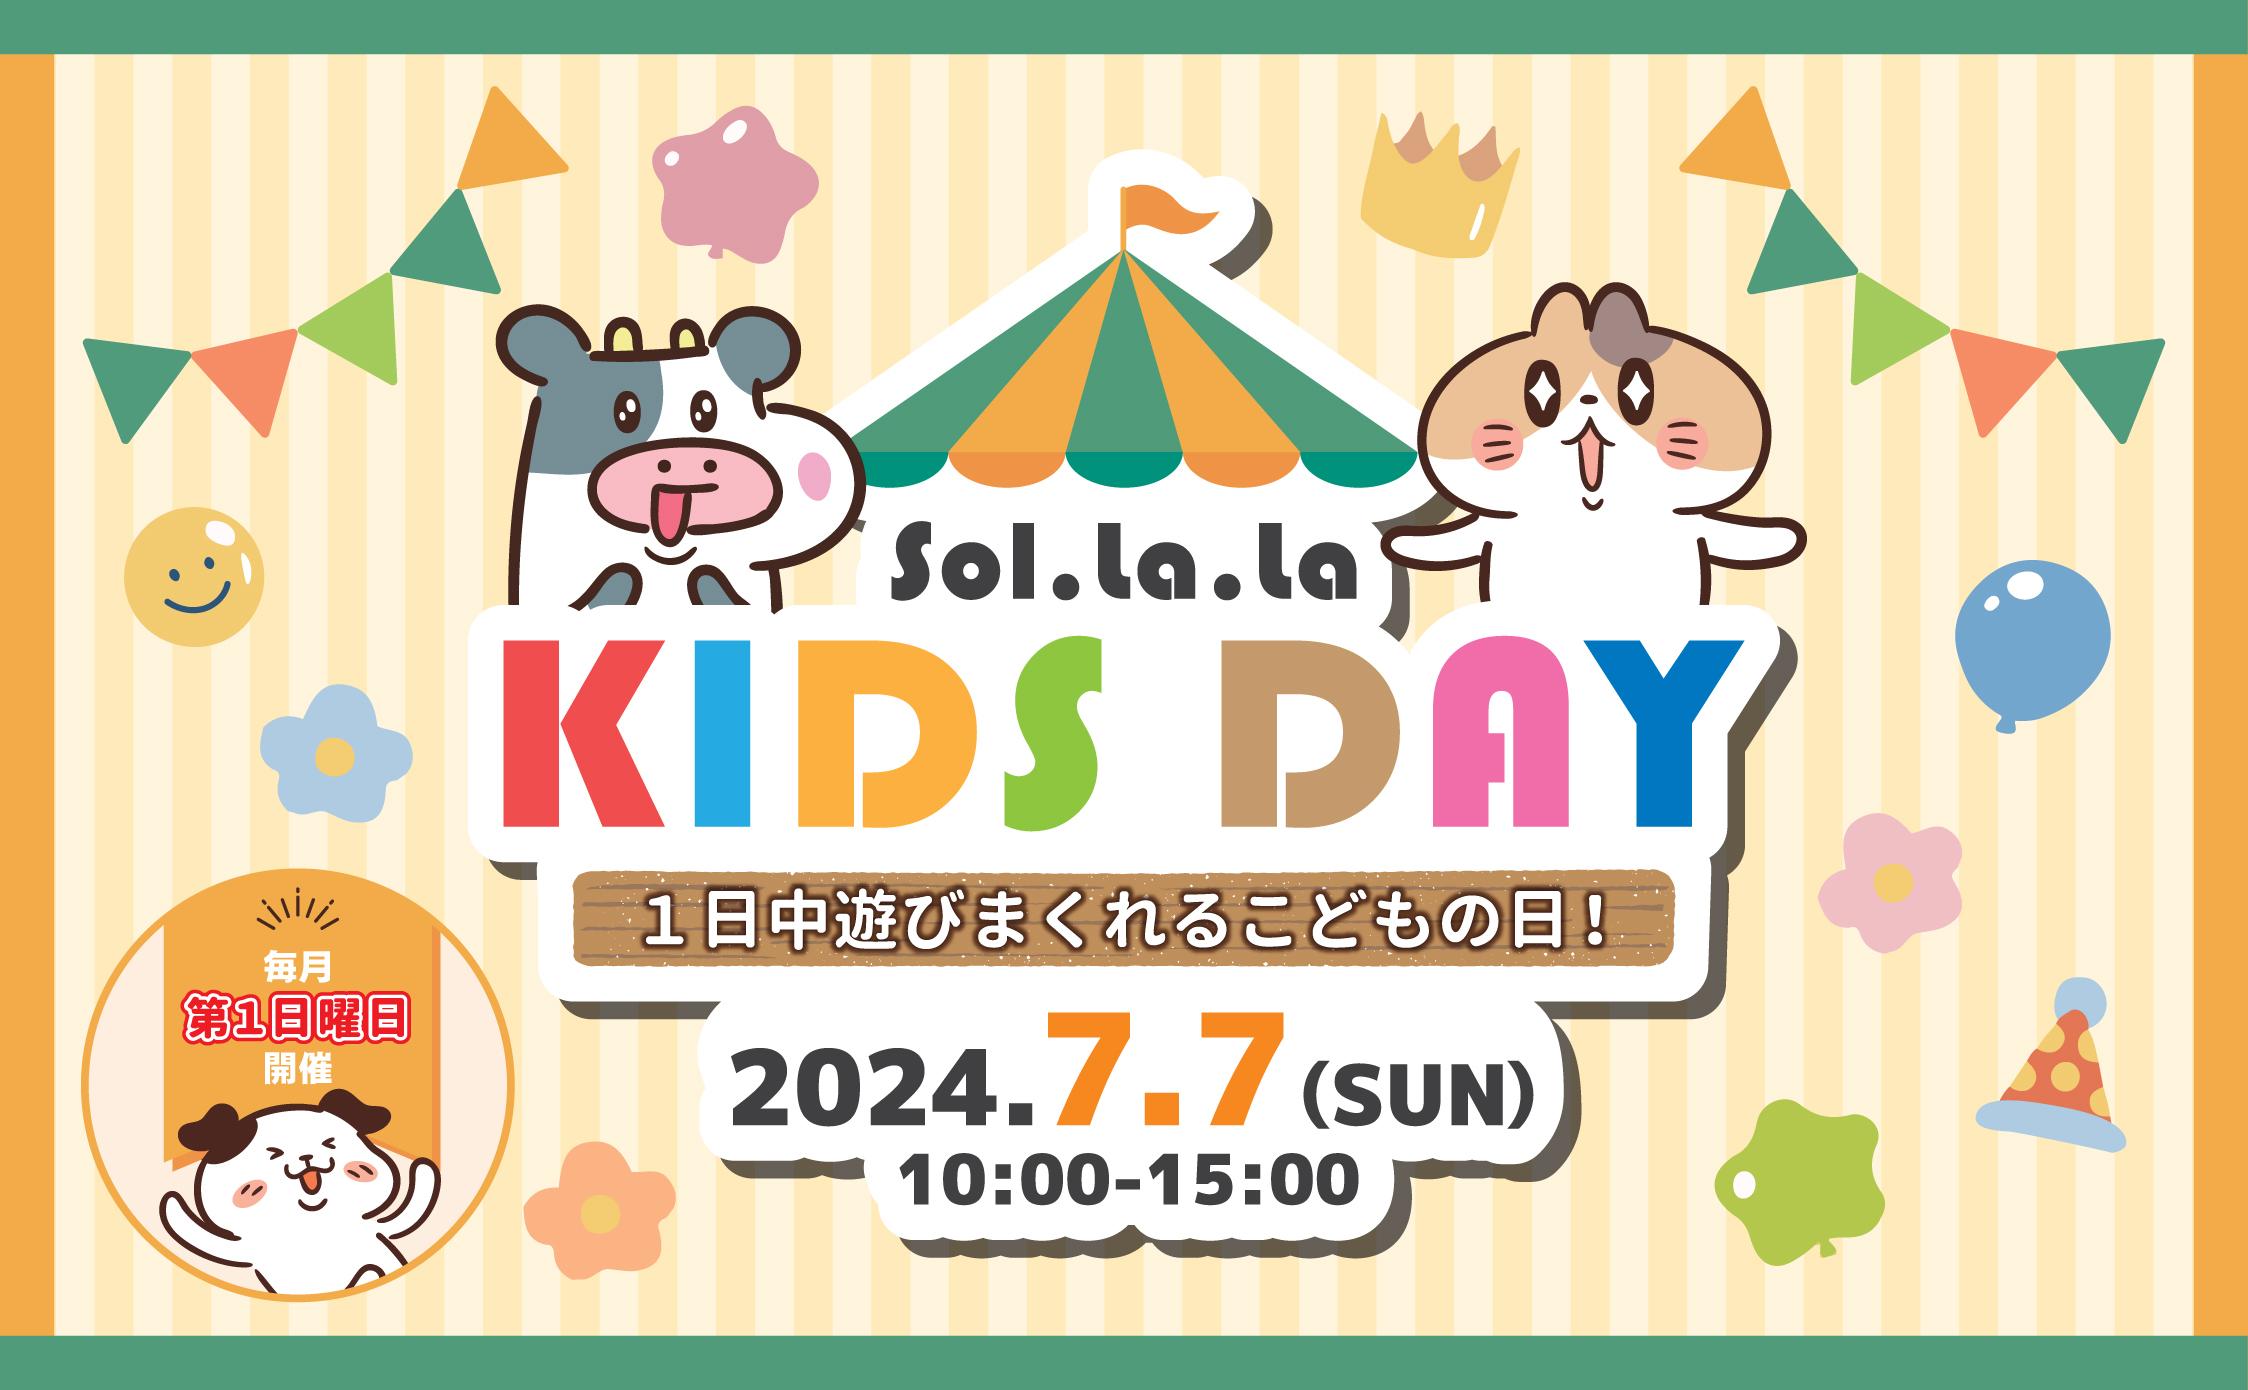 7月7日（日曜日）は「Sol・la・la KIDS DAY」を開催します！